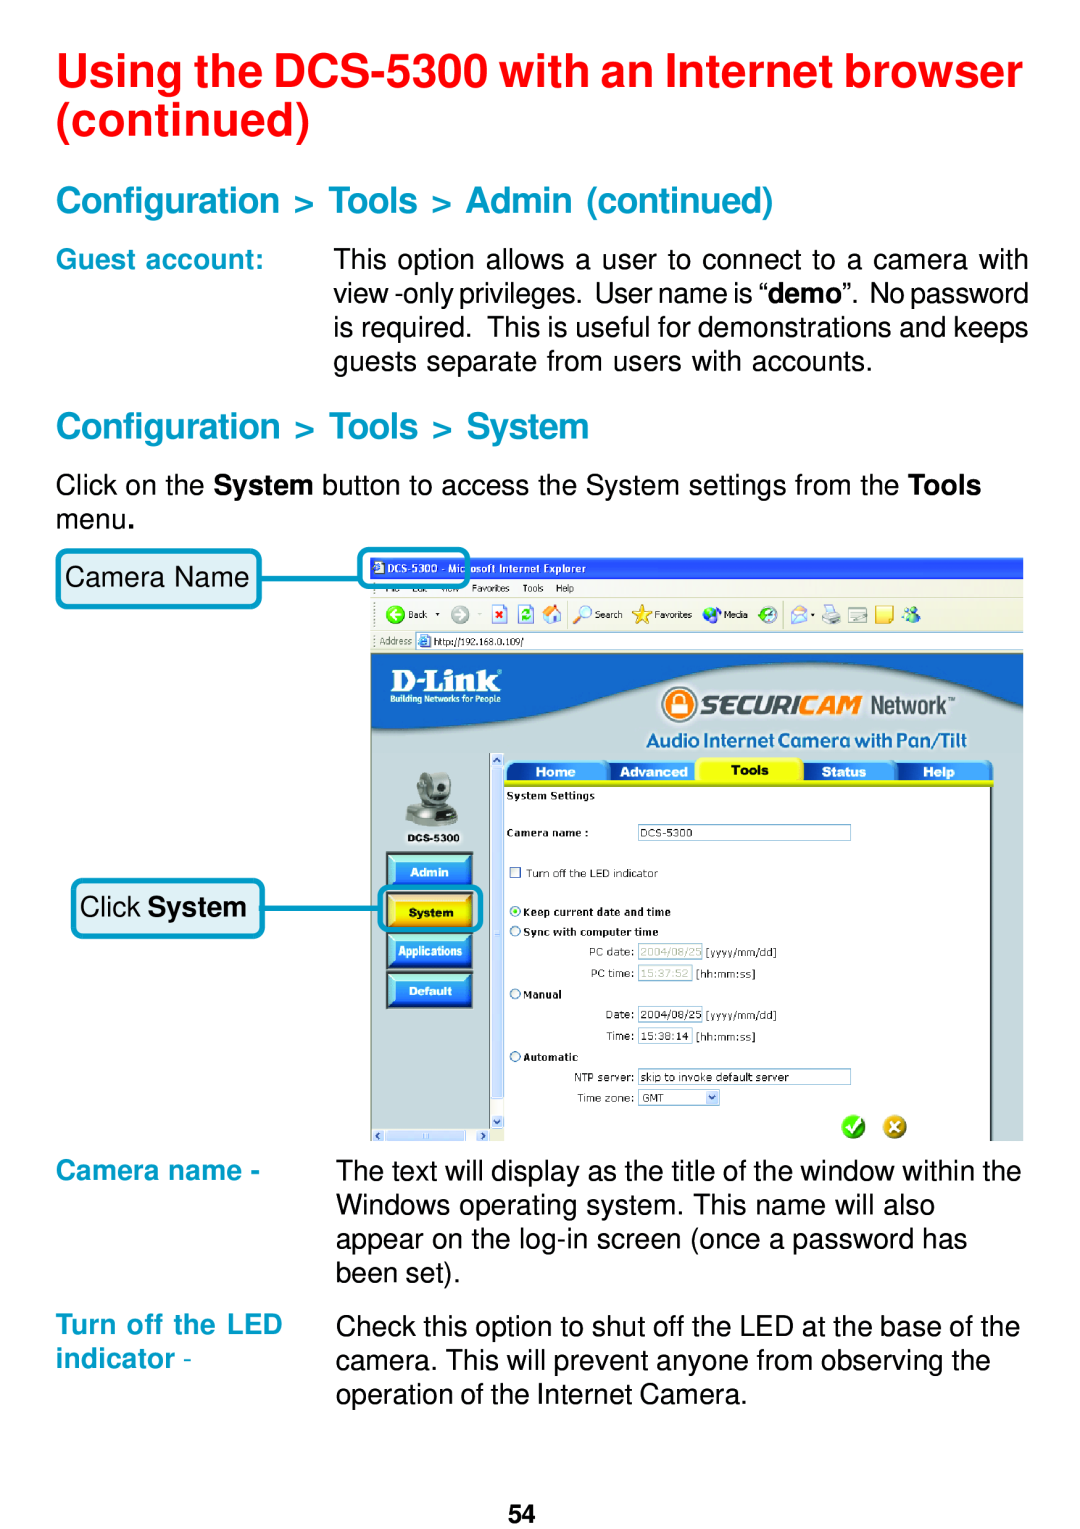 D-Link DCS-5300 manual Configuration Tools Admin continued, Configuration Tools System, Click System 